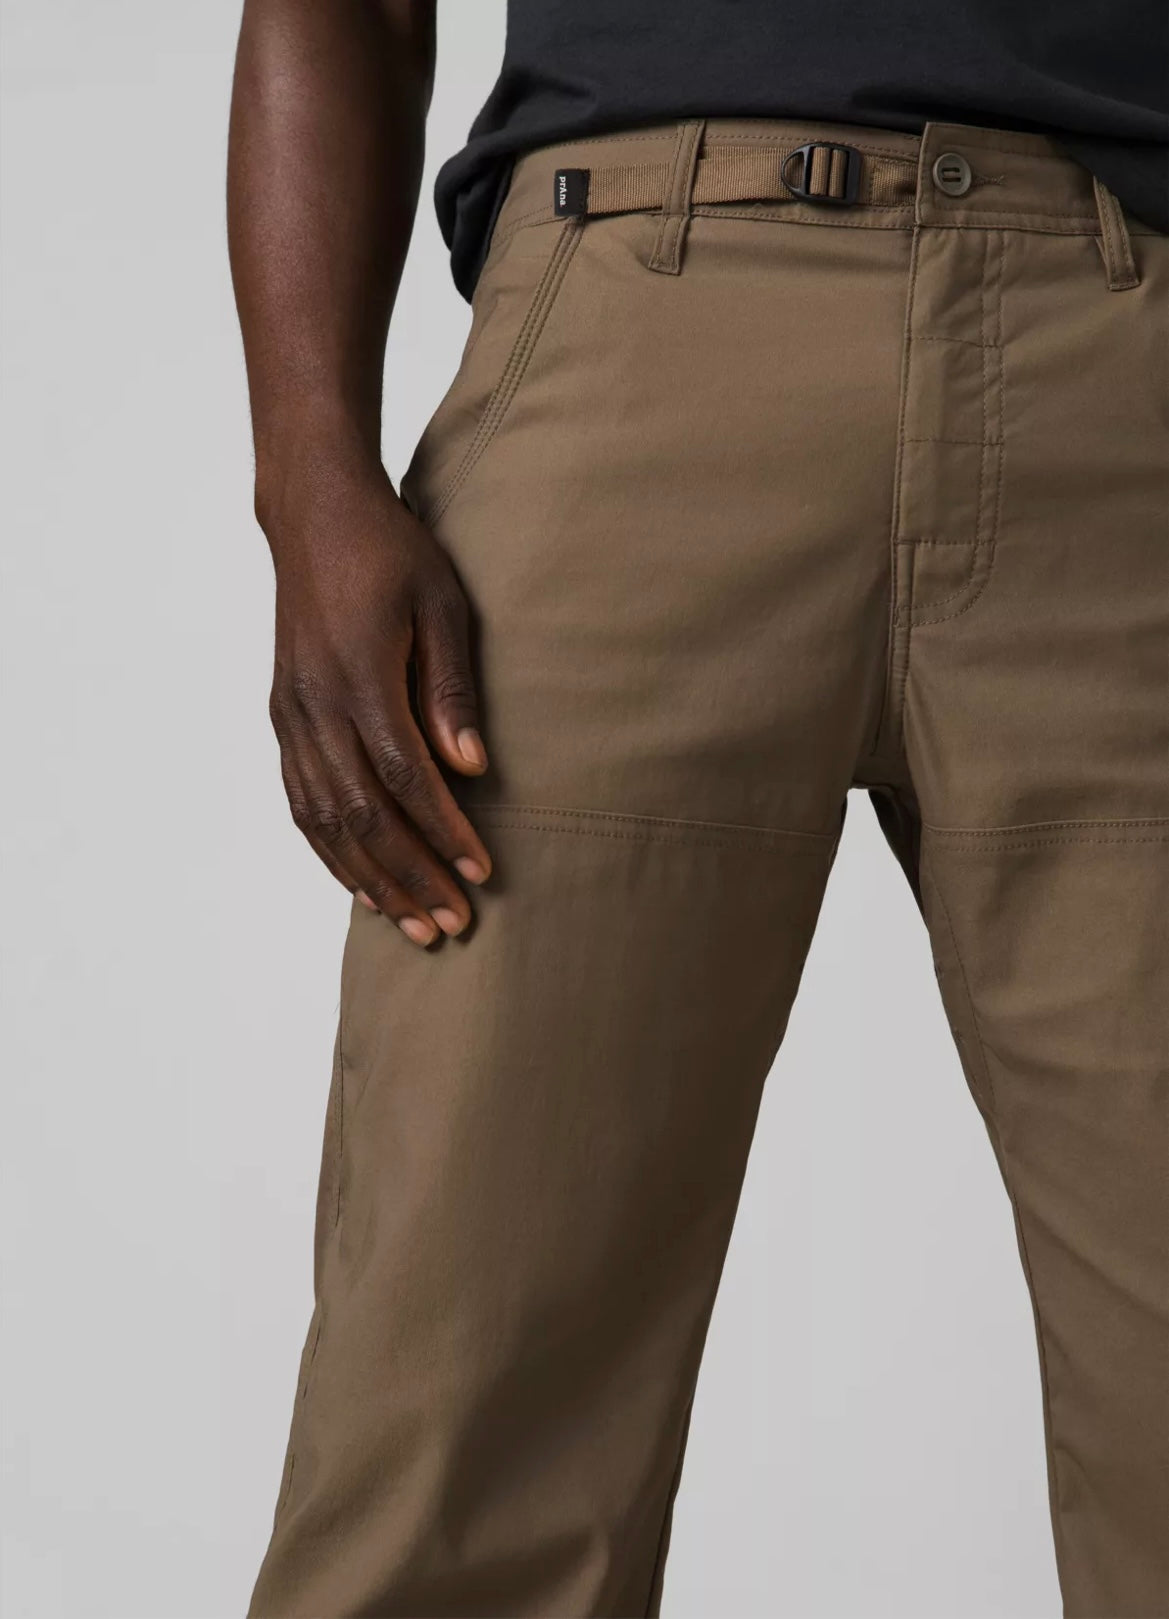 PRANA Men's Stretch Zion Slim Pant II 32 Inseam